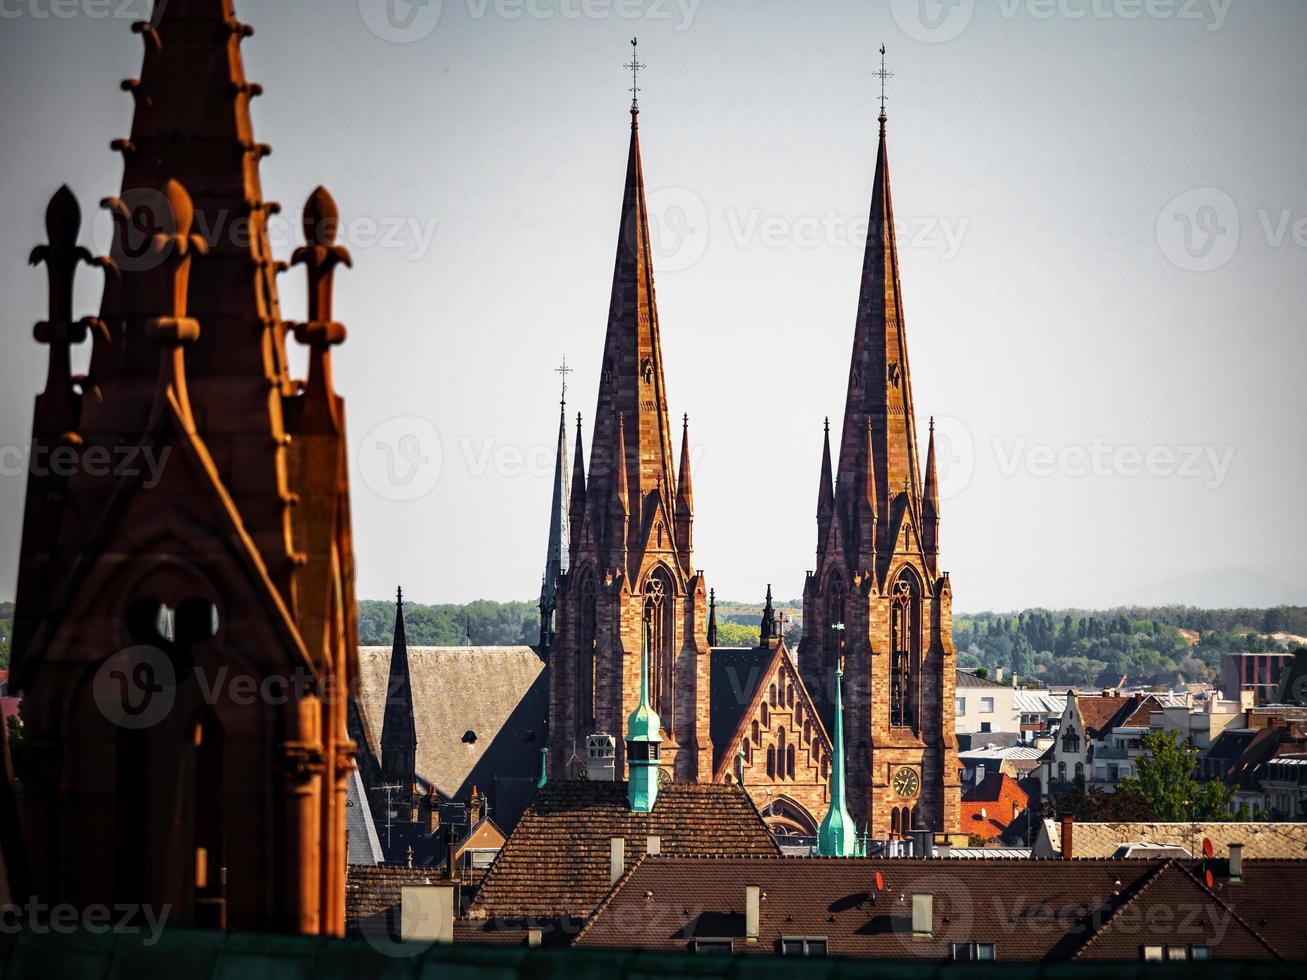 luchtfoto van de stad straatsburg. zonnige dag. rode pannendaken. hervormde kerk sint paulus foto